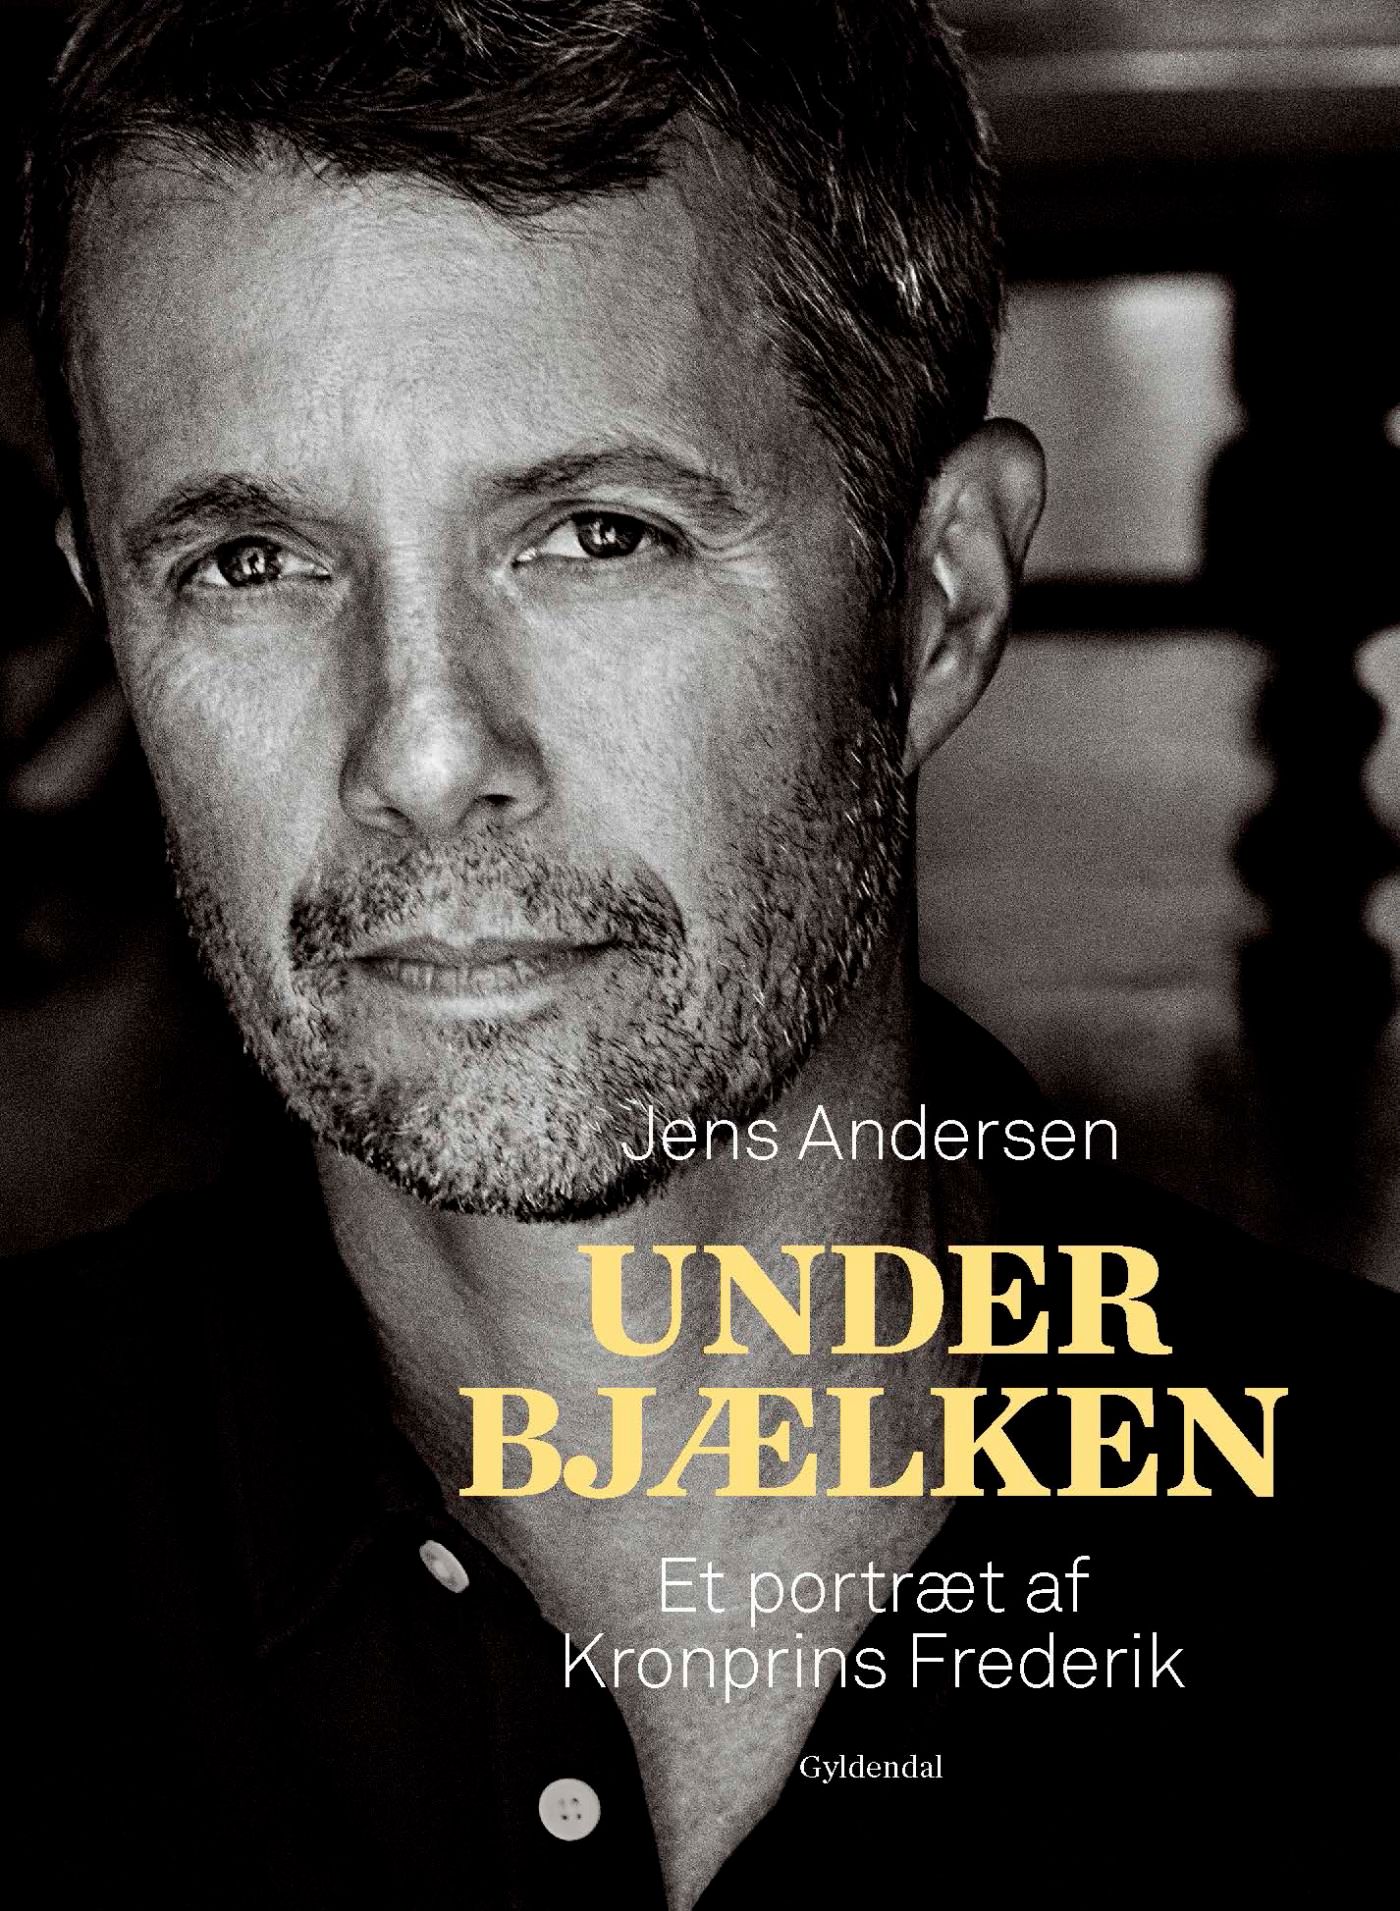 Under bjælken, e-bok av Jens Andersen